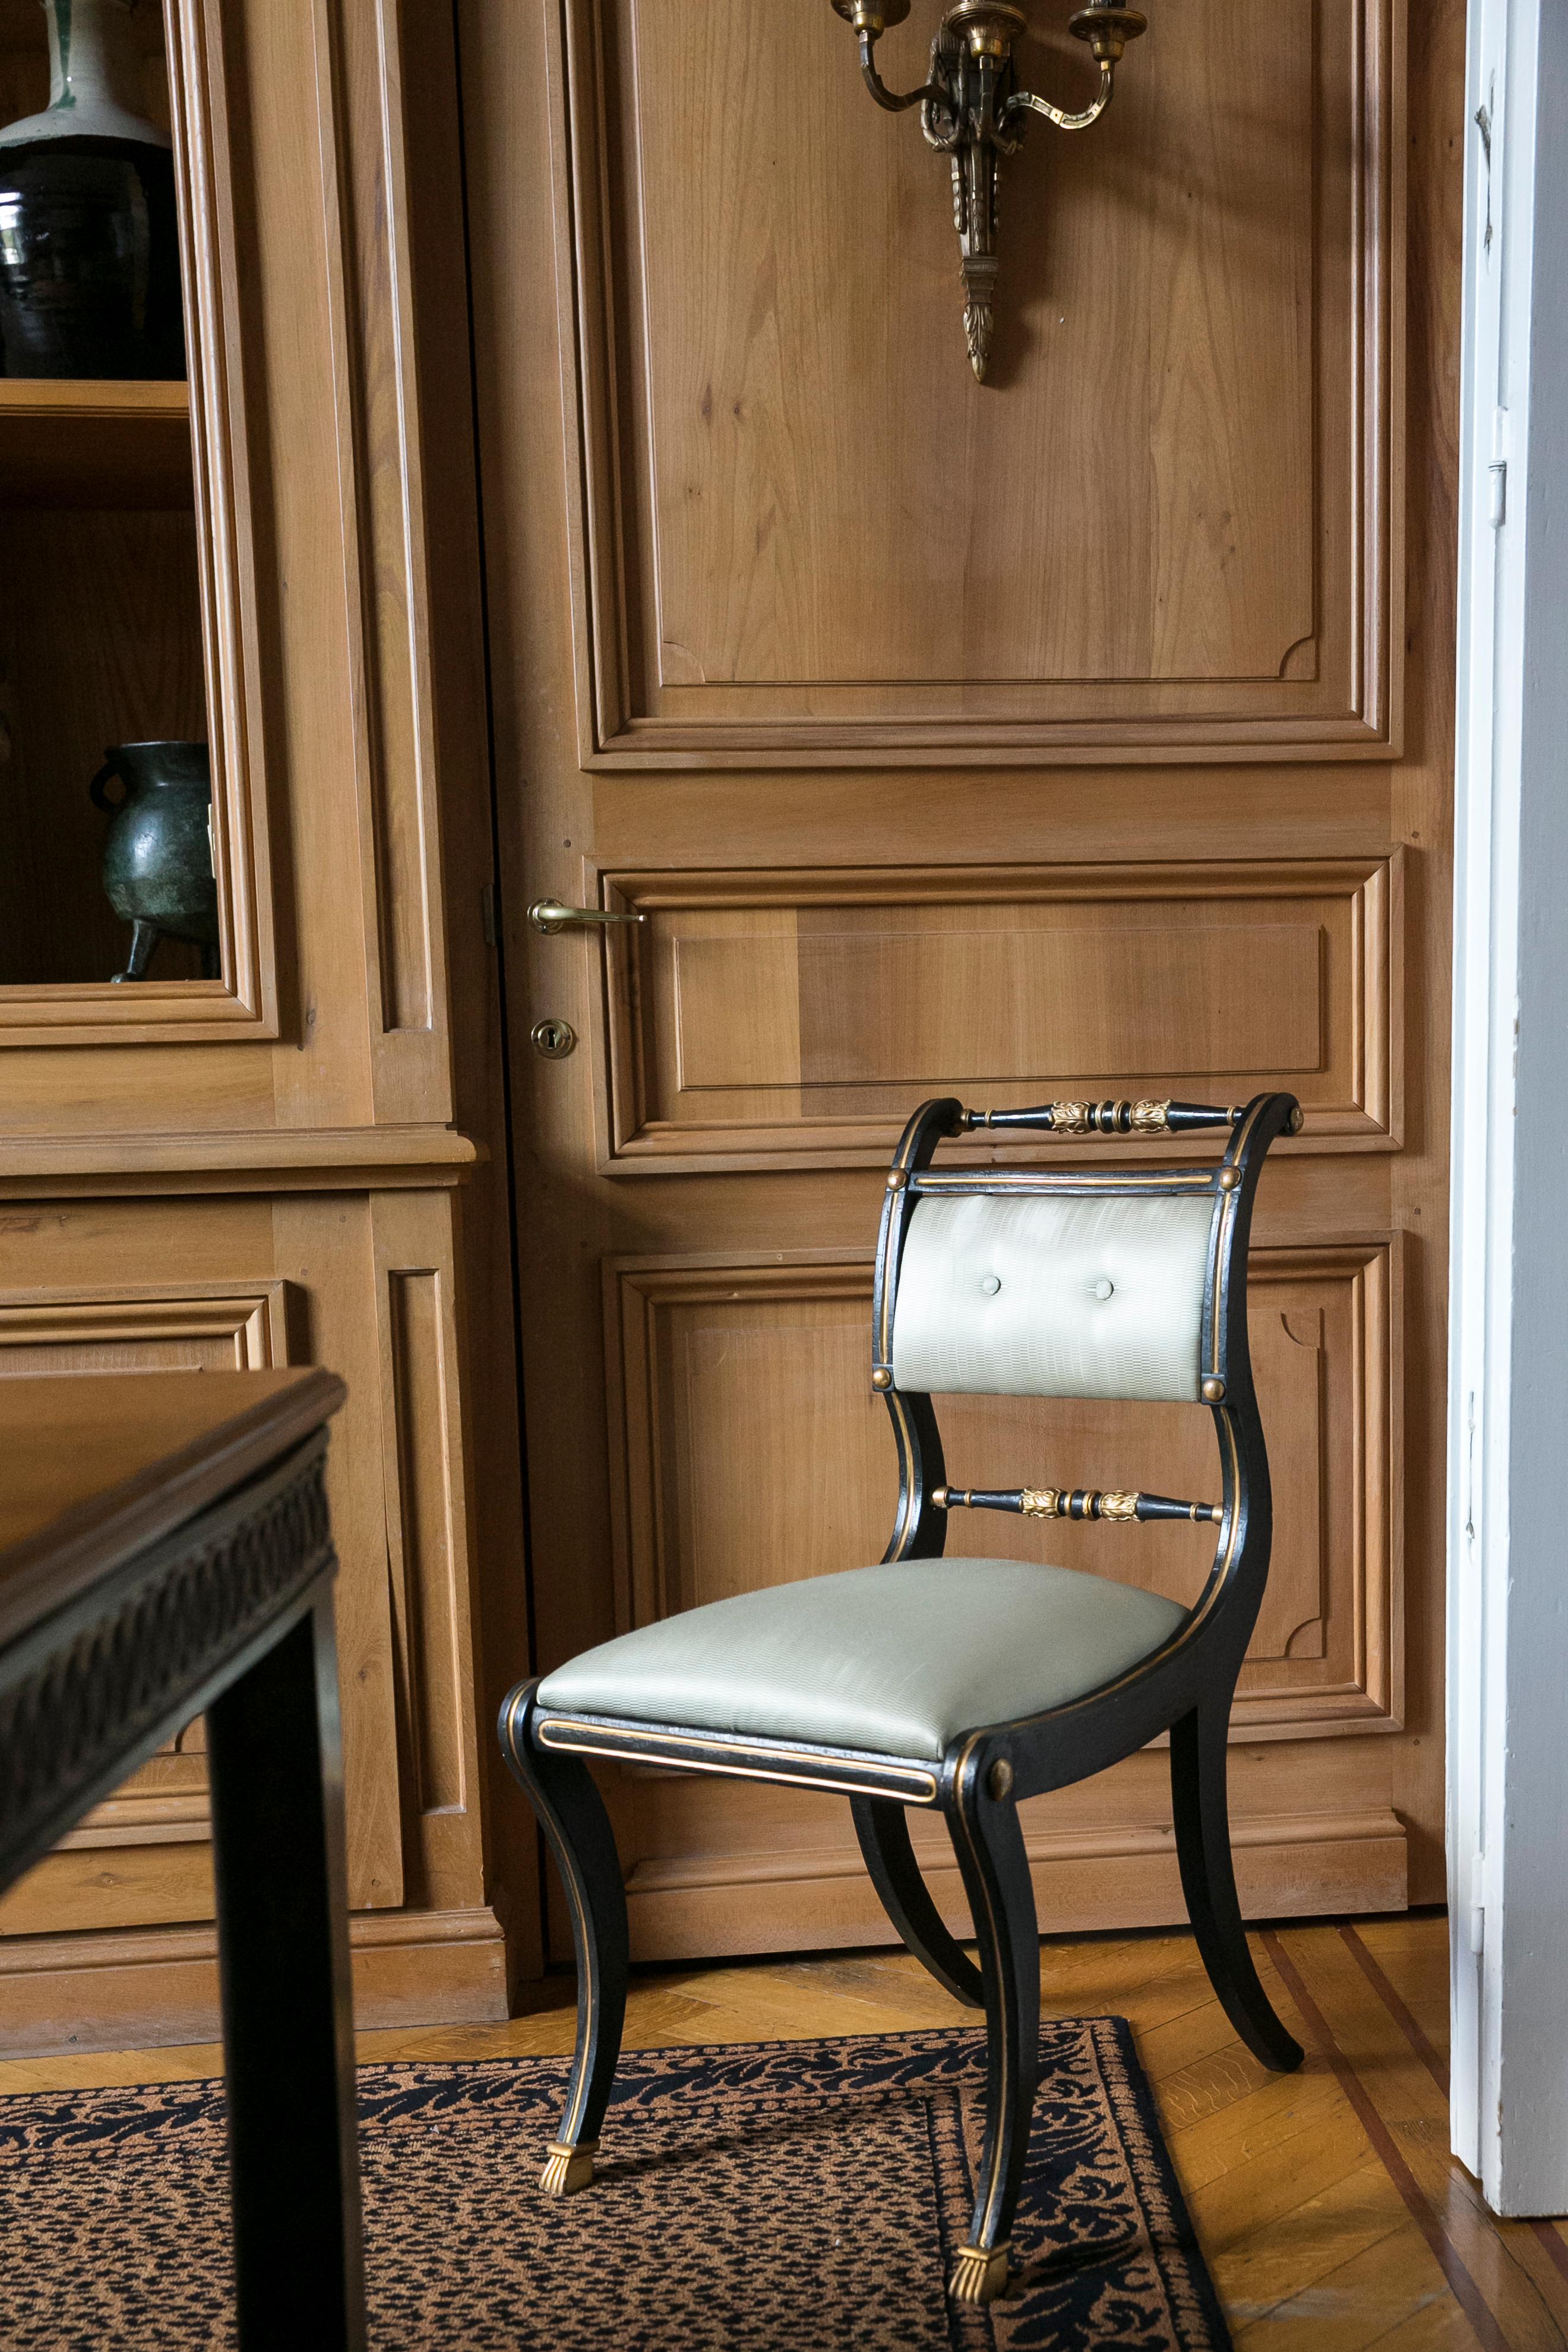 Satz von sechs Stühlen im Regency-Stil (aus dieser Zeit) und zwei Kopien aus den 90er Jahren.
Geschnitztes und schwarz lackiertes Holz mit vergoldeten Filets, durchbrochene Rückenlehne.